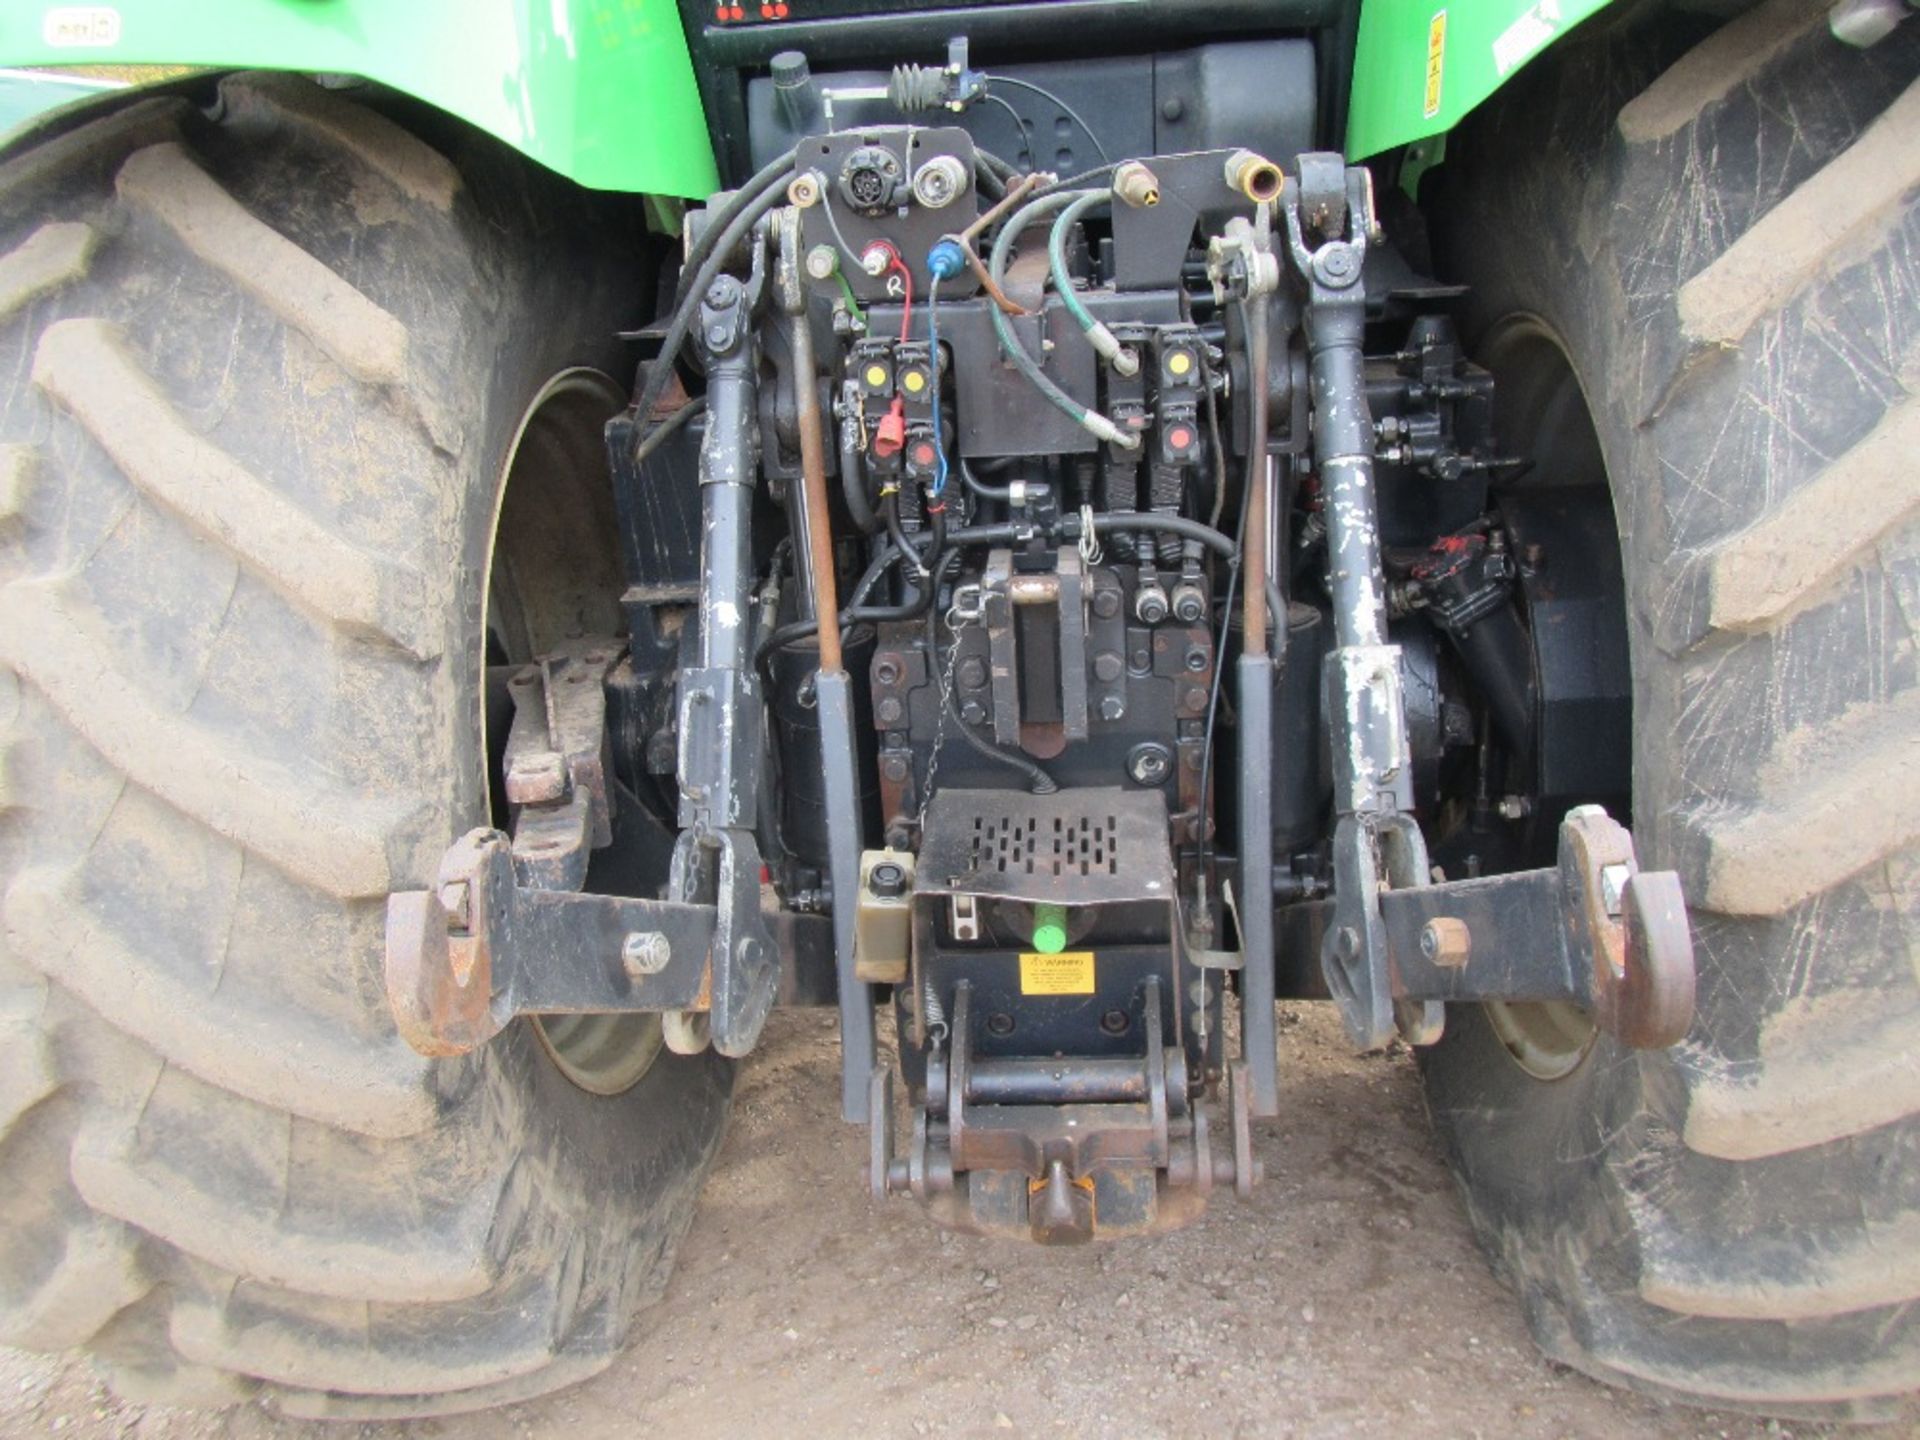 2009 Deutz X720 4wd Tractor Reg No AU09 ECJ Ser No 10445 - Image 8 of 18